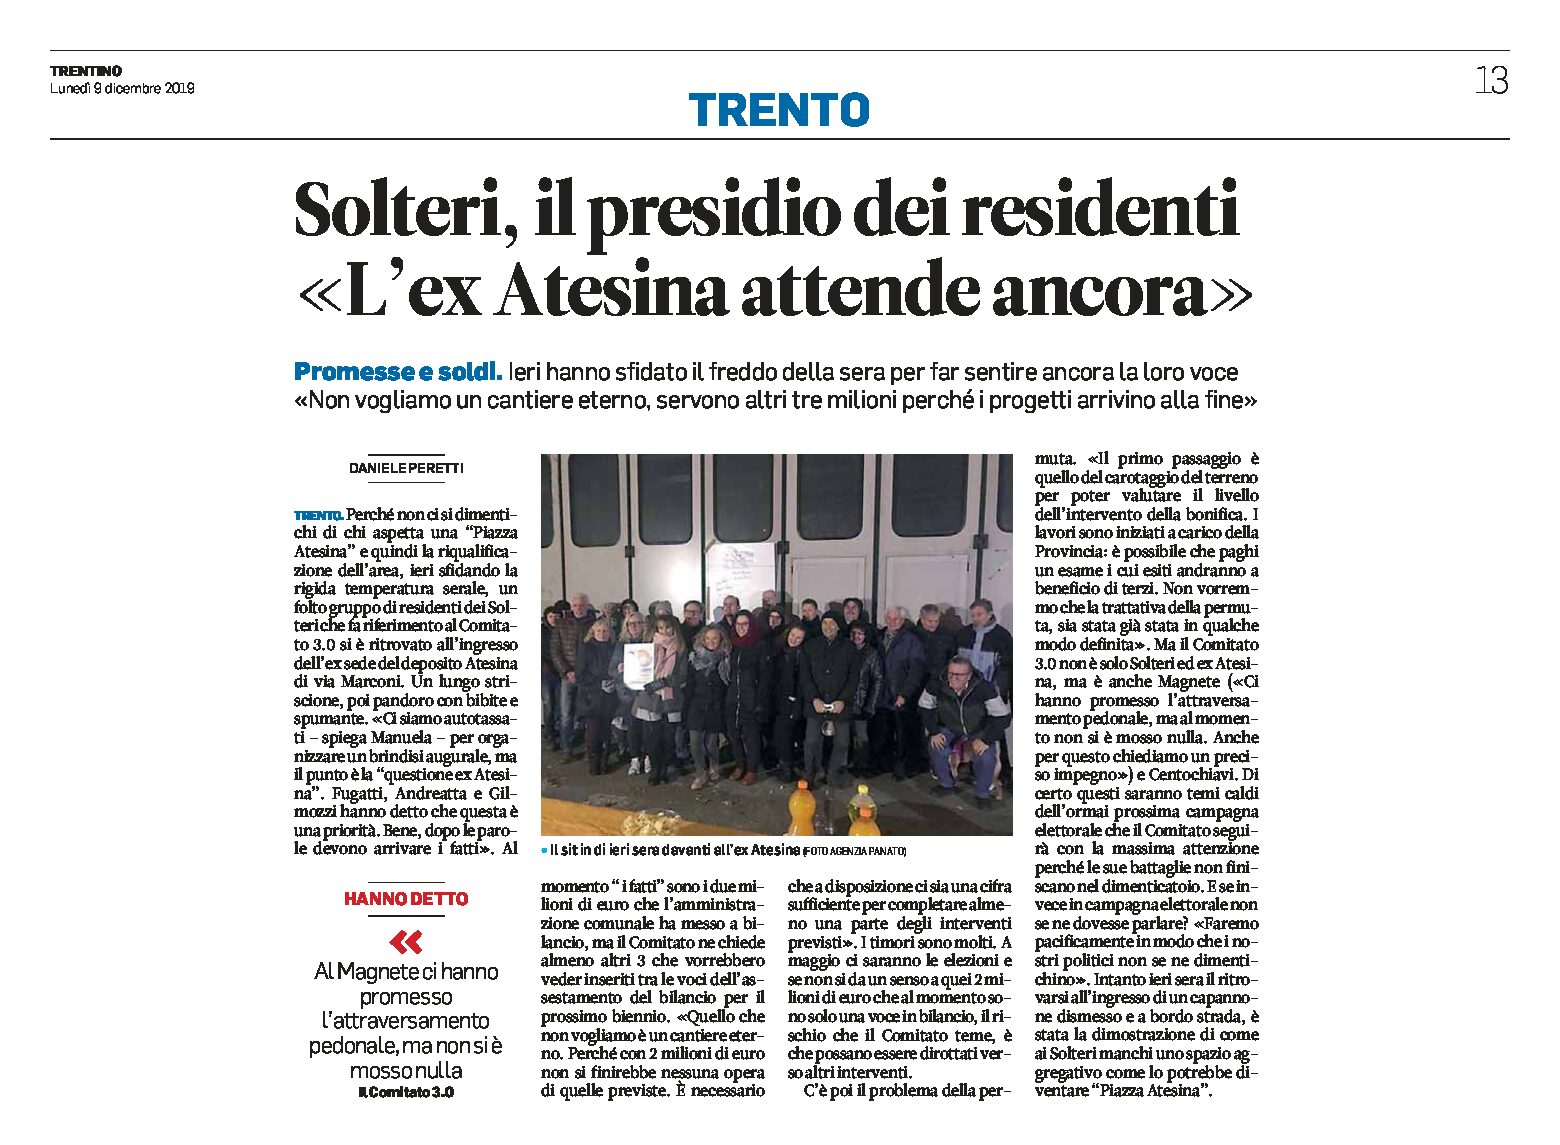 Trento, ex Atesina: presidio dei residenti “non vogliamo un cantiere eterno”